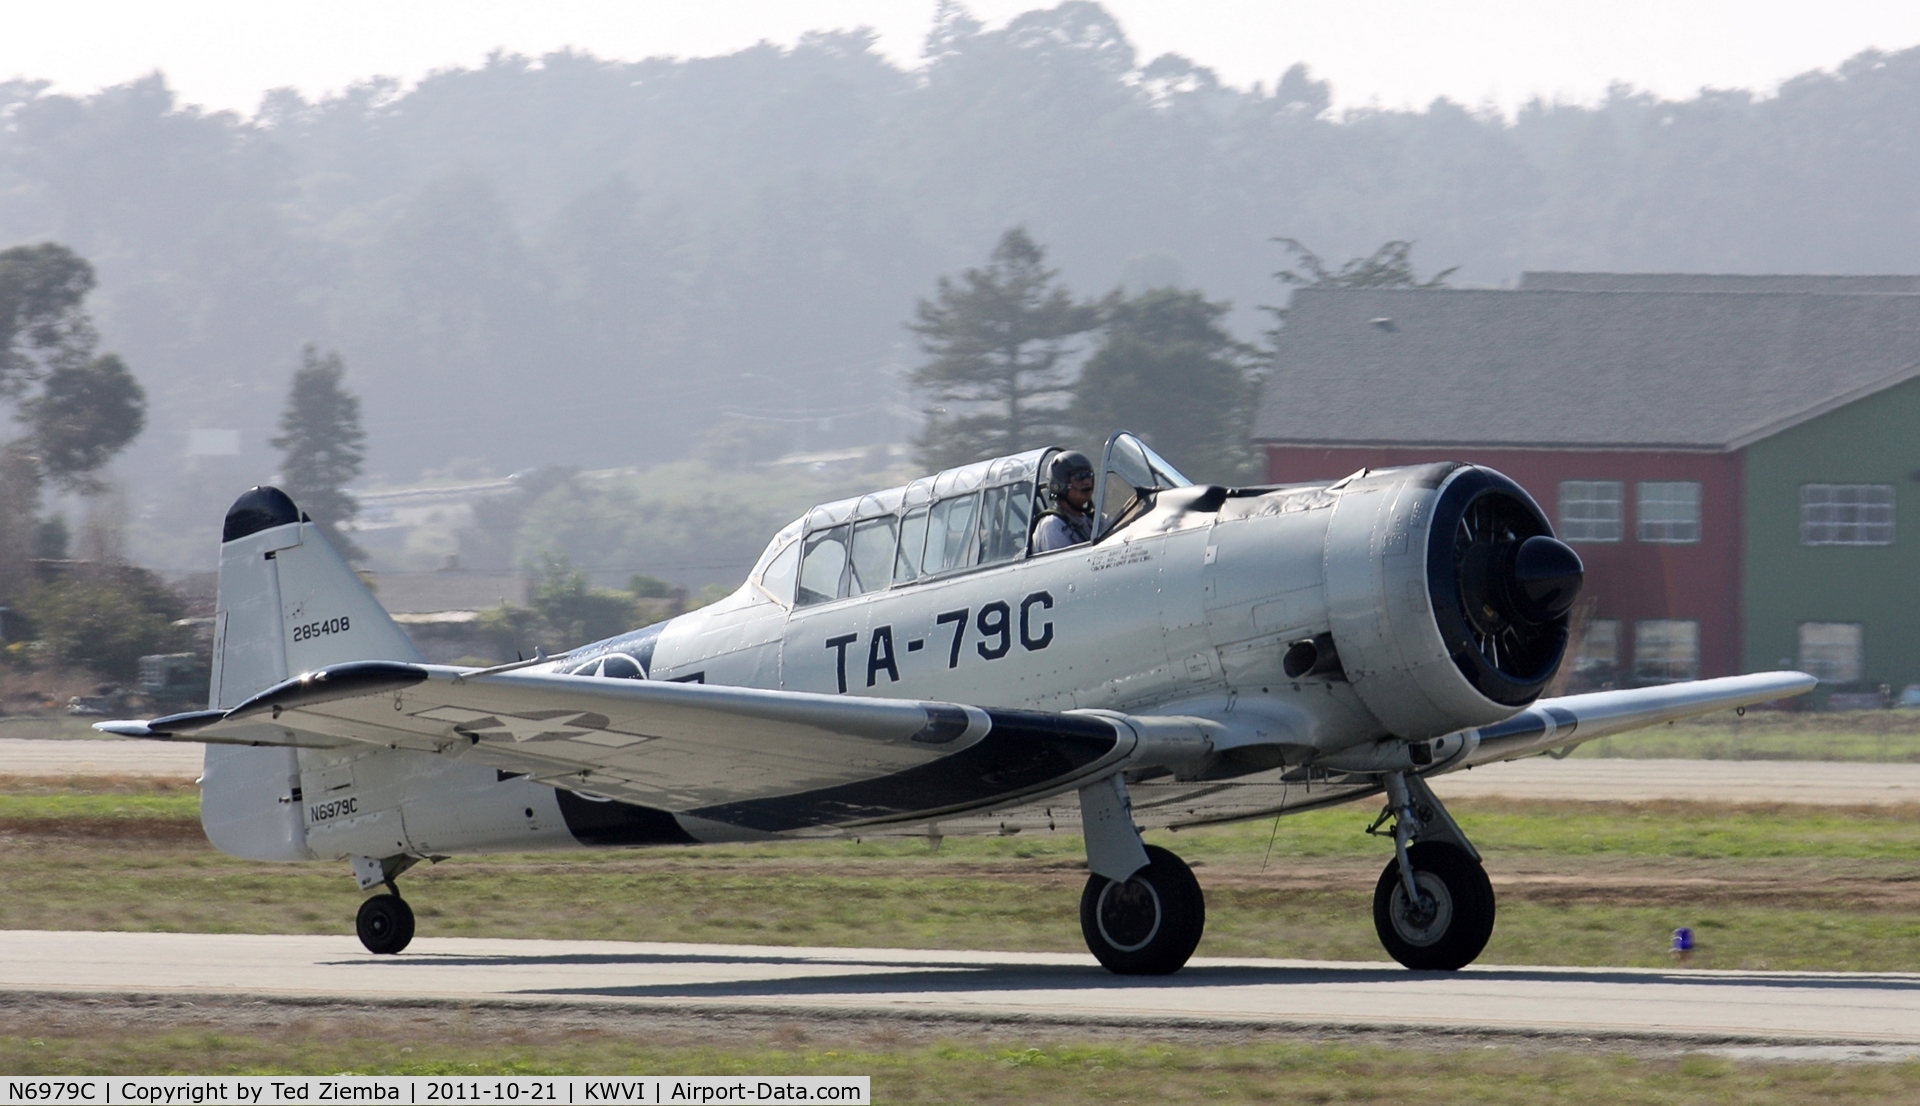 N6979C, North American AT-6D Texan C/N 42-85408, N6979C seen taxiing to runway 20, Watsonville airport.